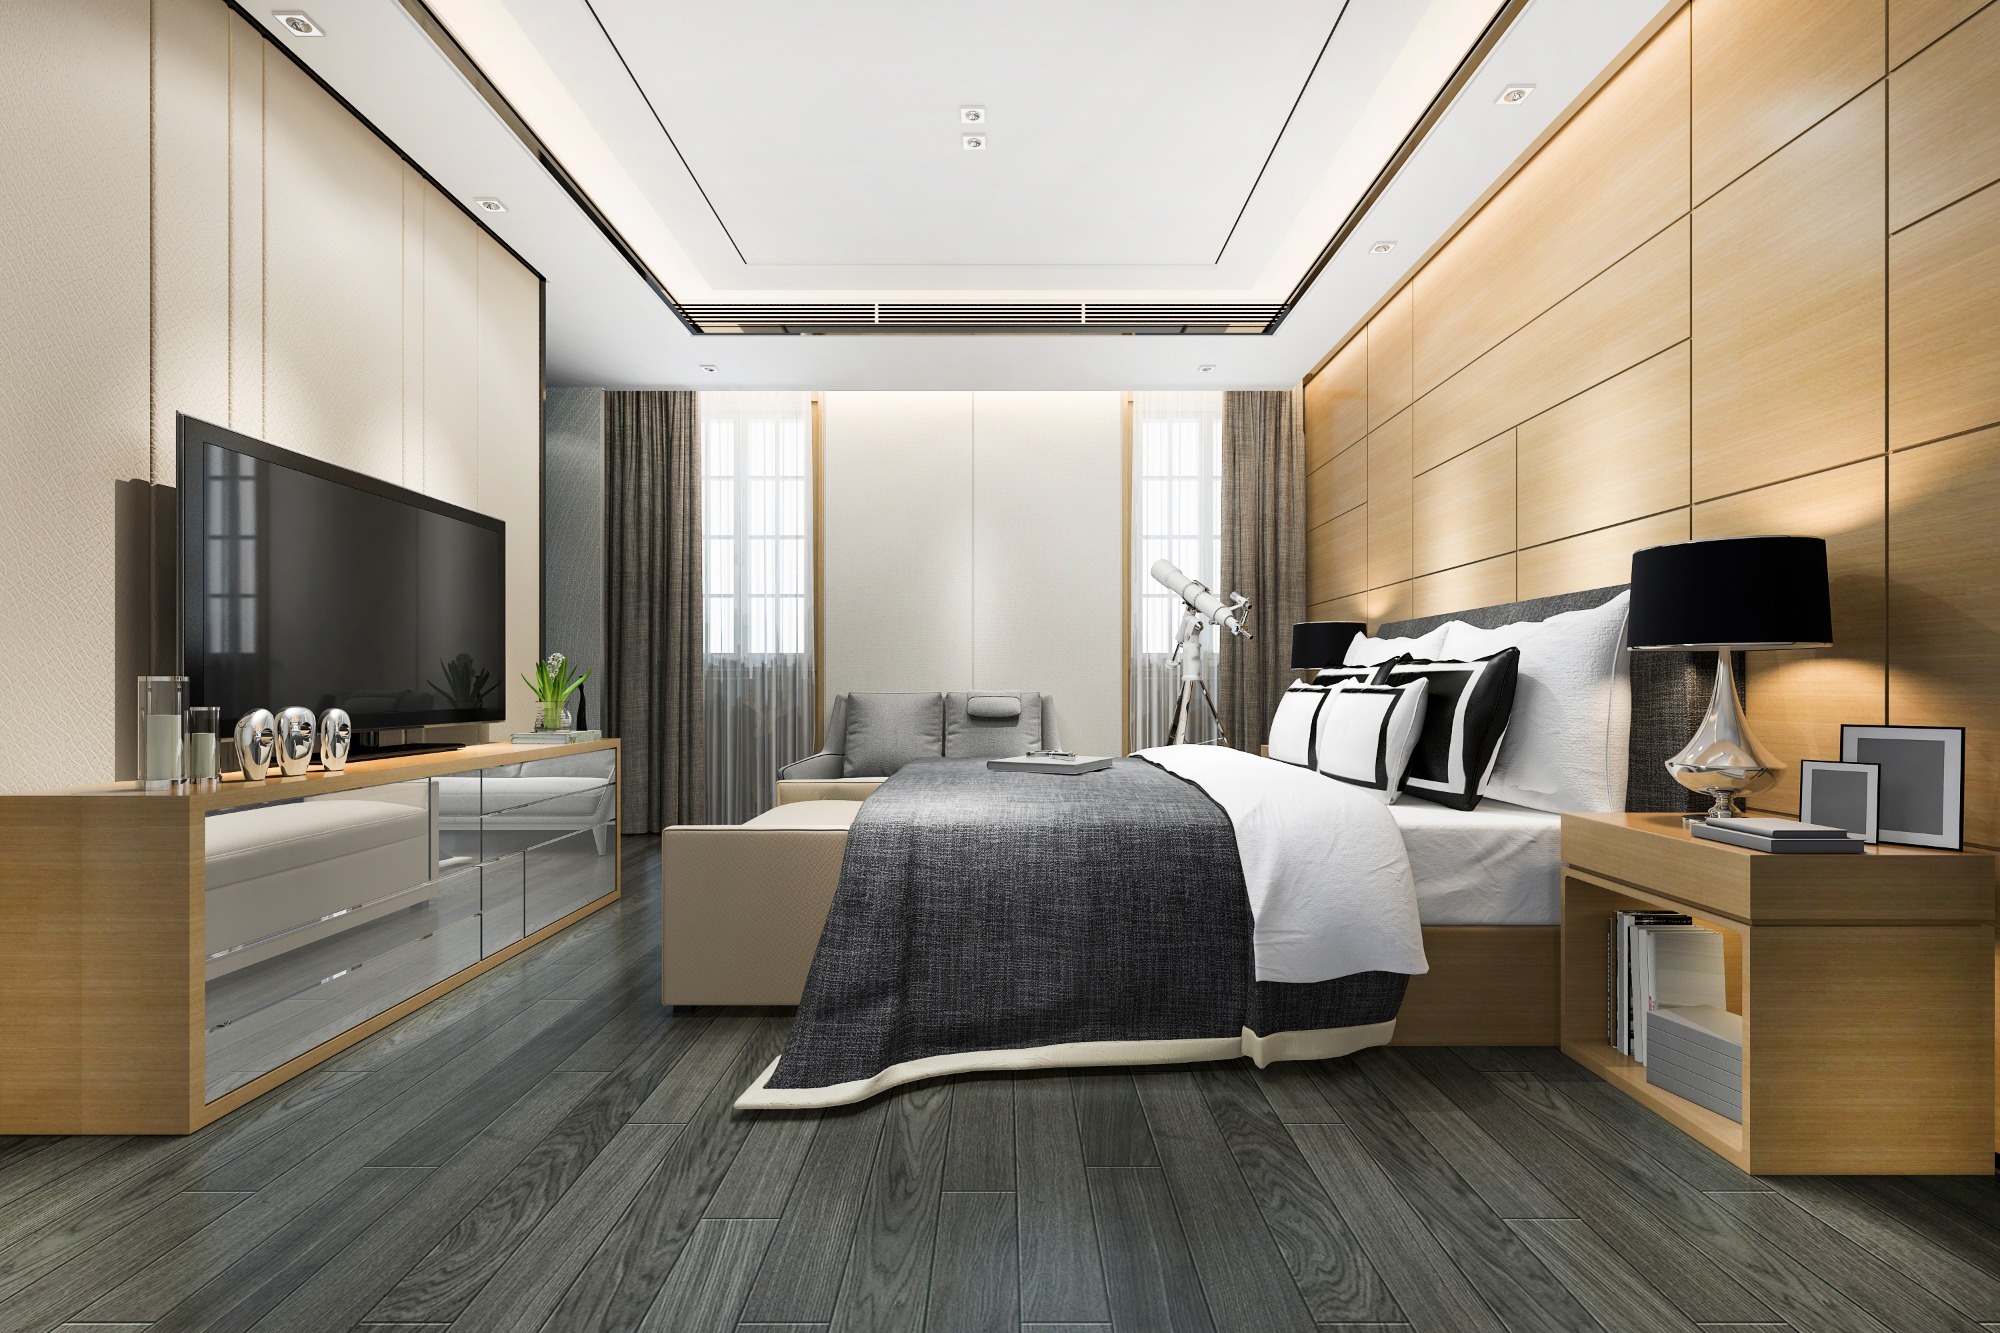 3d-rendering-luxury-modern-bedroom-suite-in-hotel-2021-08-28-10-13-55-utc.jpg